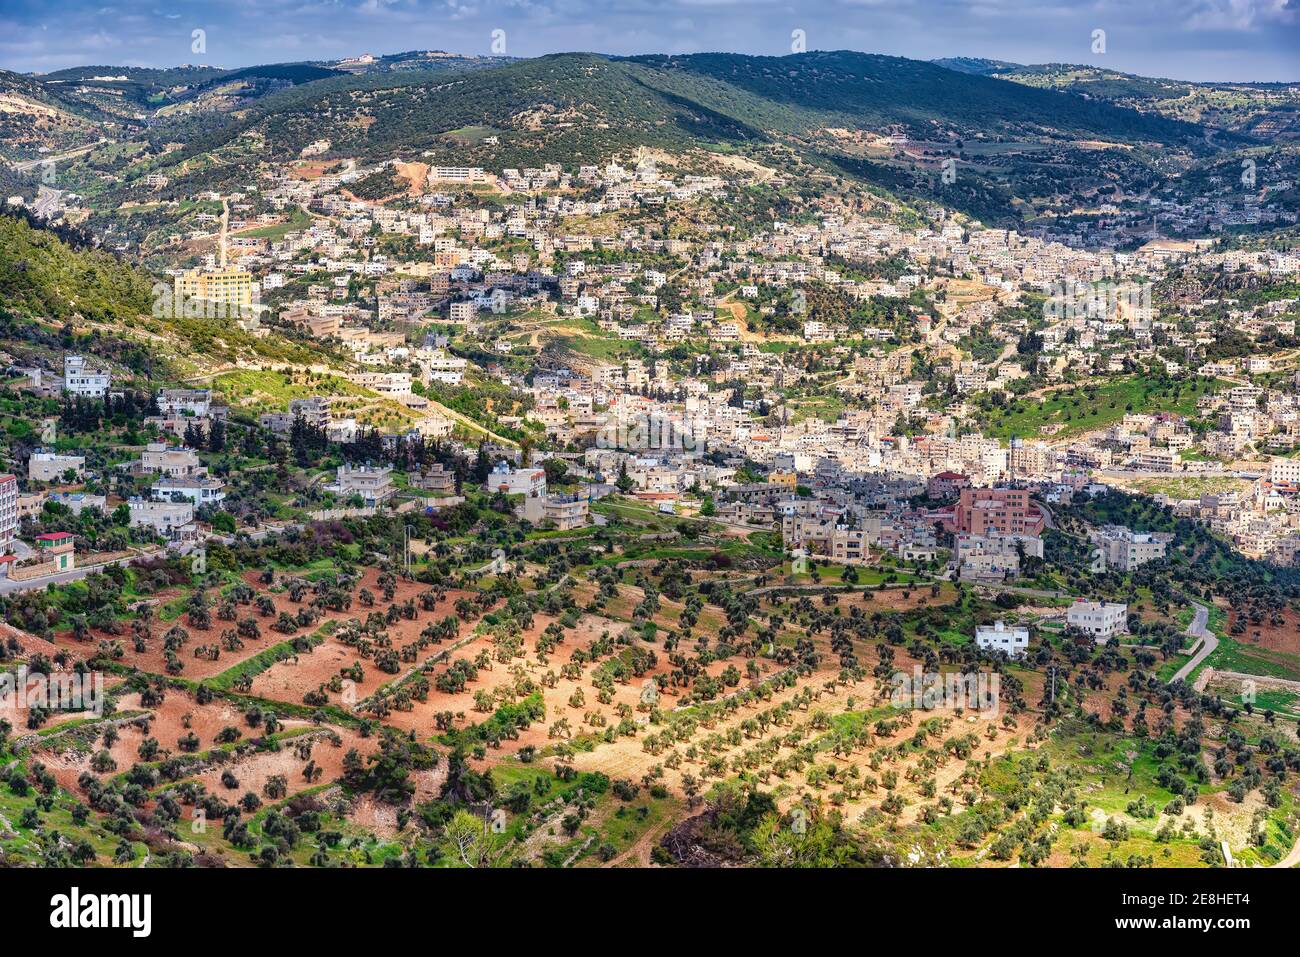 Vue aérienne de la ville d'Ajloun depuis le château de Rabad, en Jordanie. Ajloun est une ville vallonnée au nord de la Jordanie célèbre pour ses impressionnantes ruines de château Banque D'Images